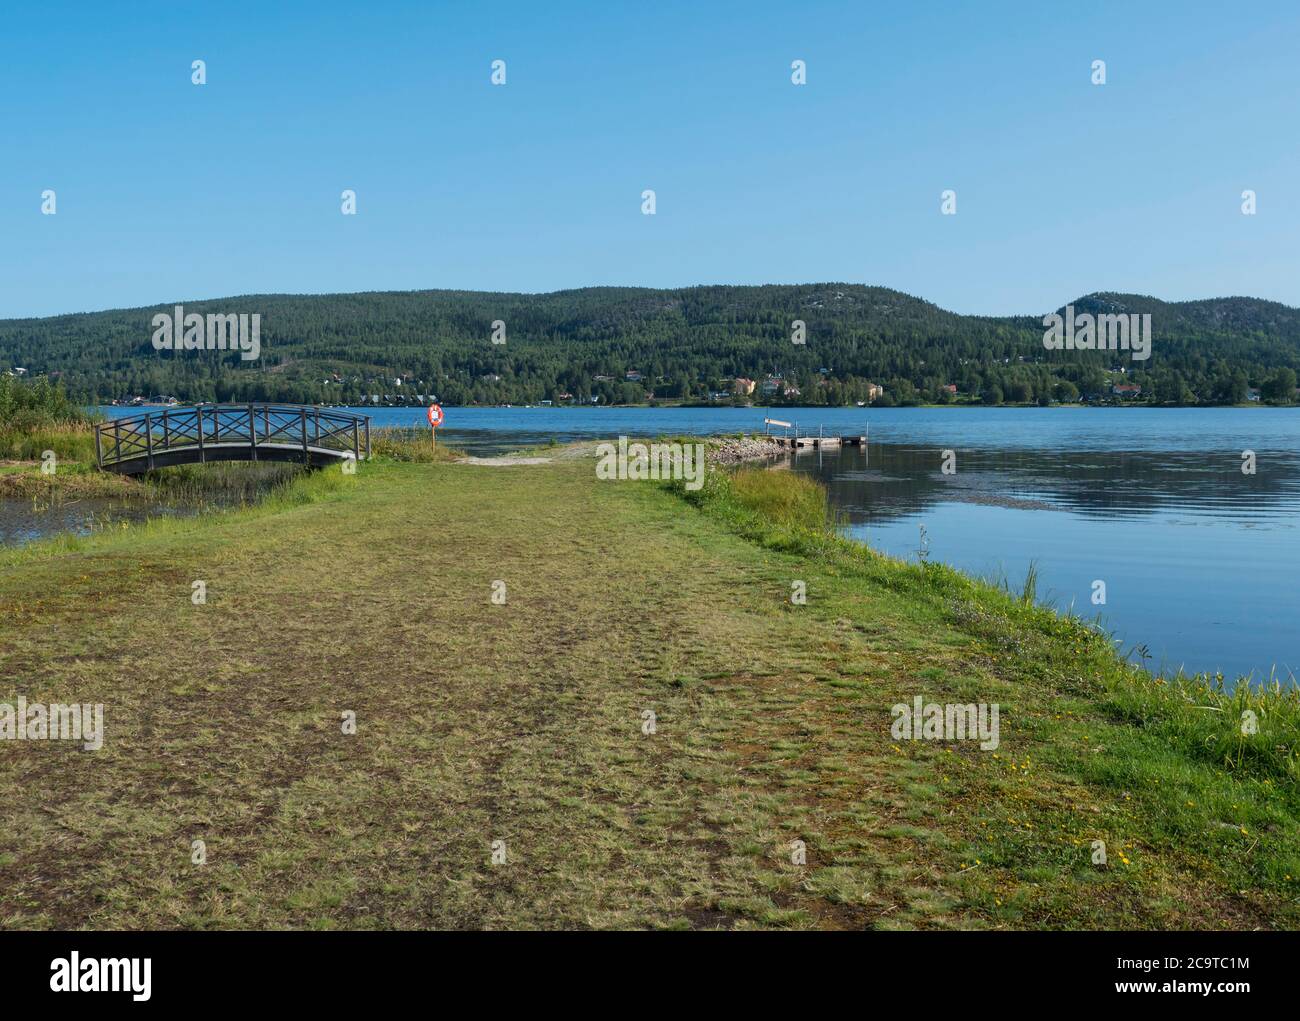 VEW sur le lac Sjalevadsfjarden dans la ville d'ornskoldsvik dans la région de Vasternorrland, en Suède. Jour ensoleillé d'été, fond bleu ciel Banque D'Images